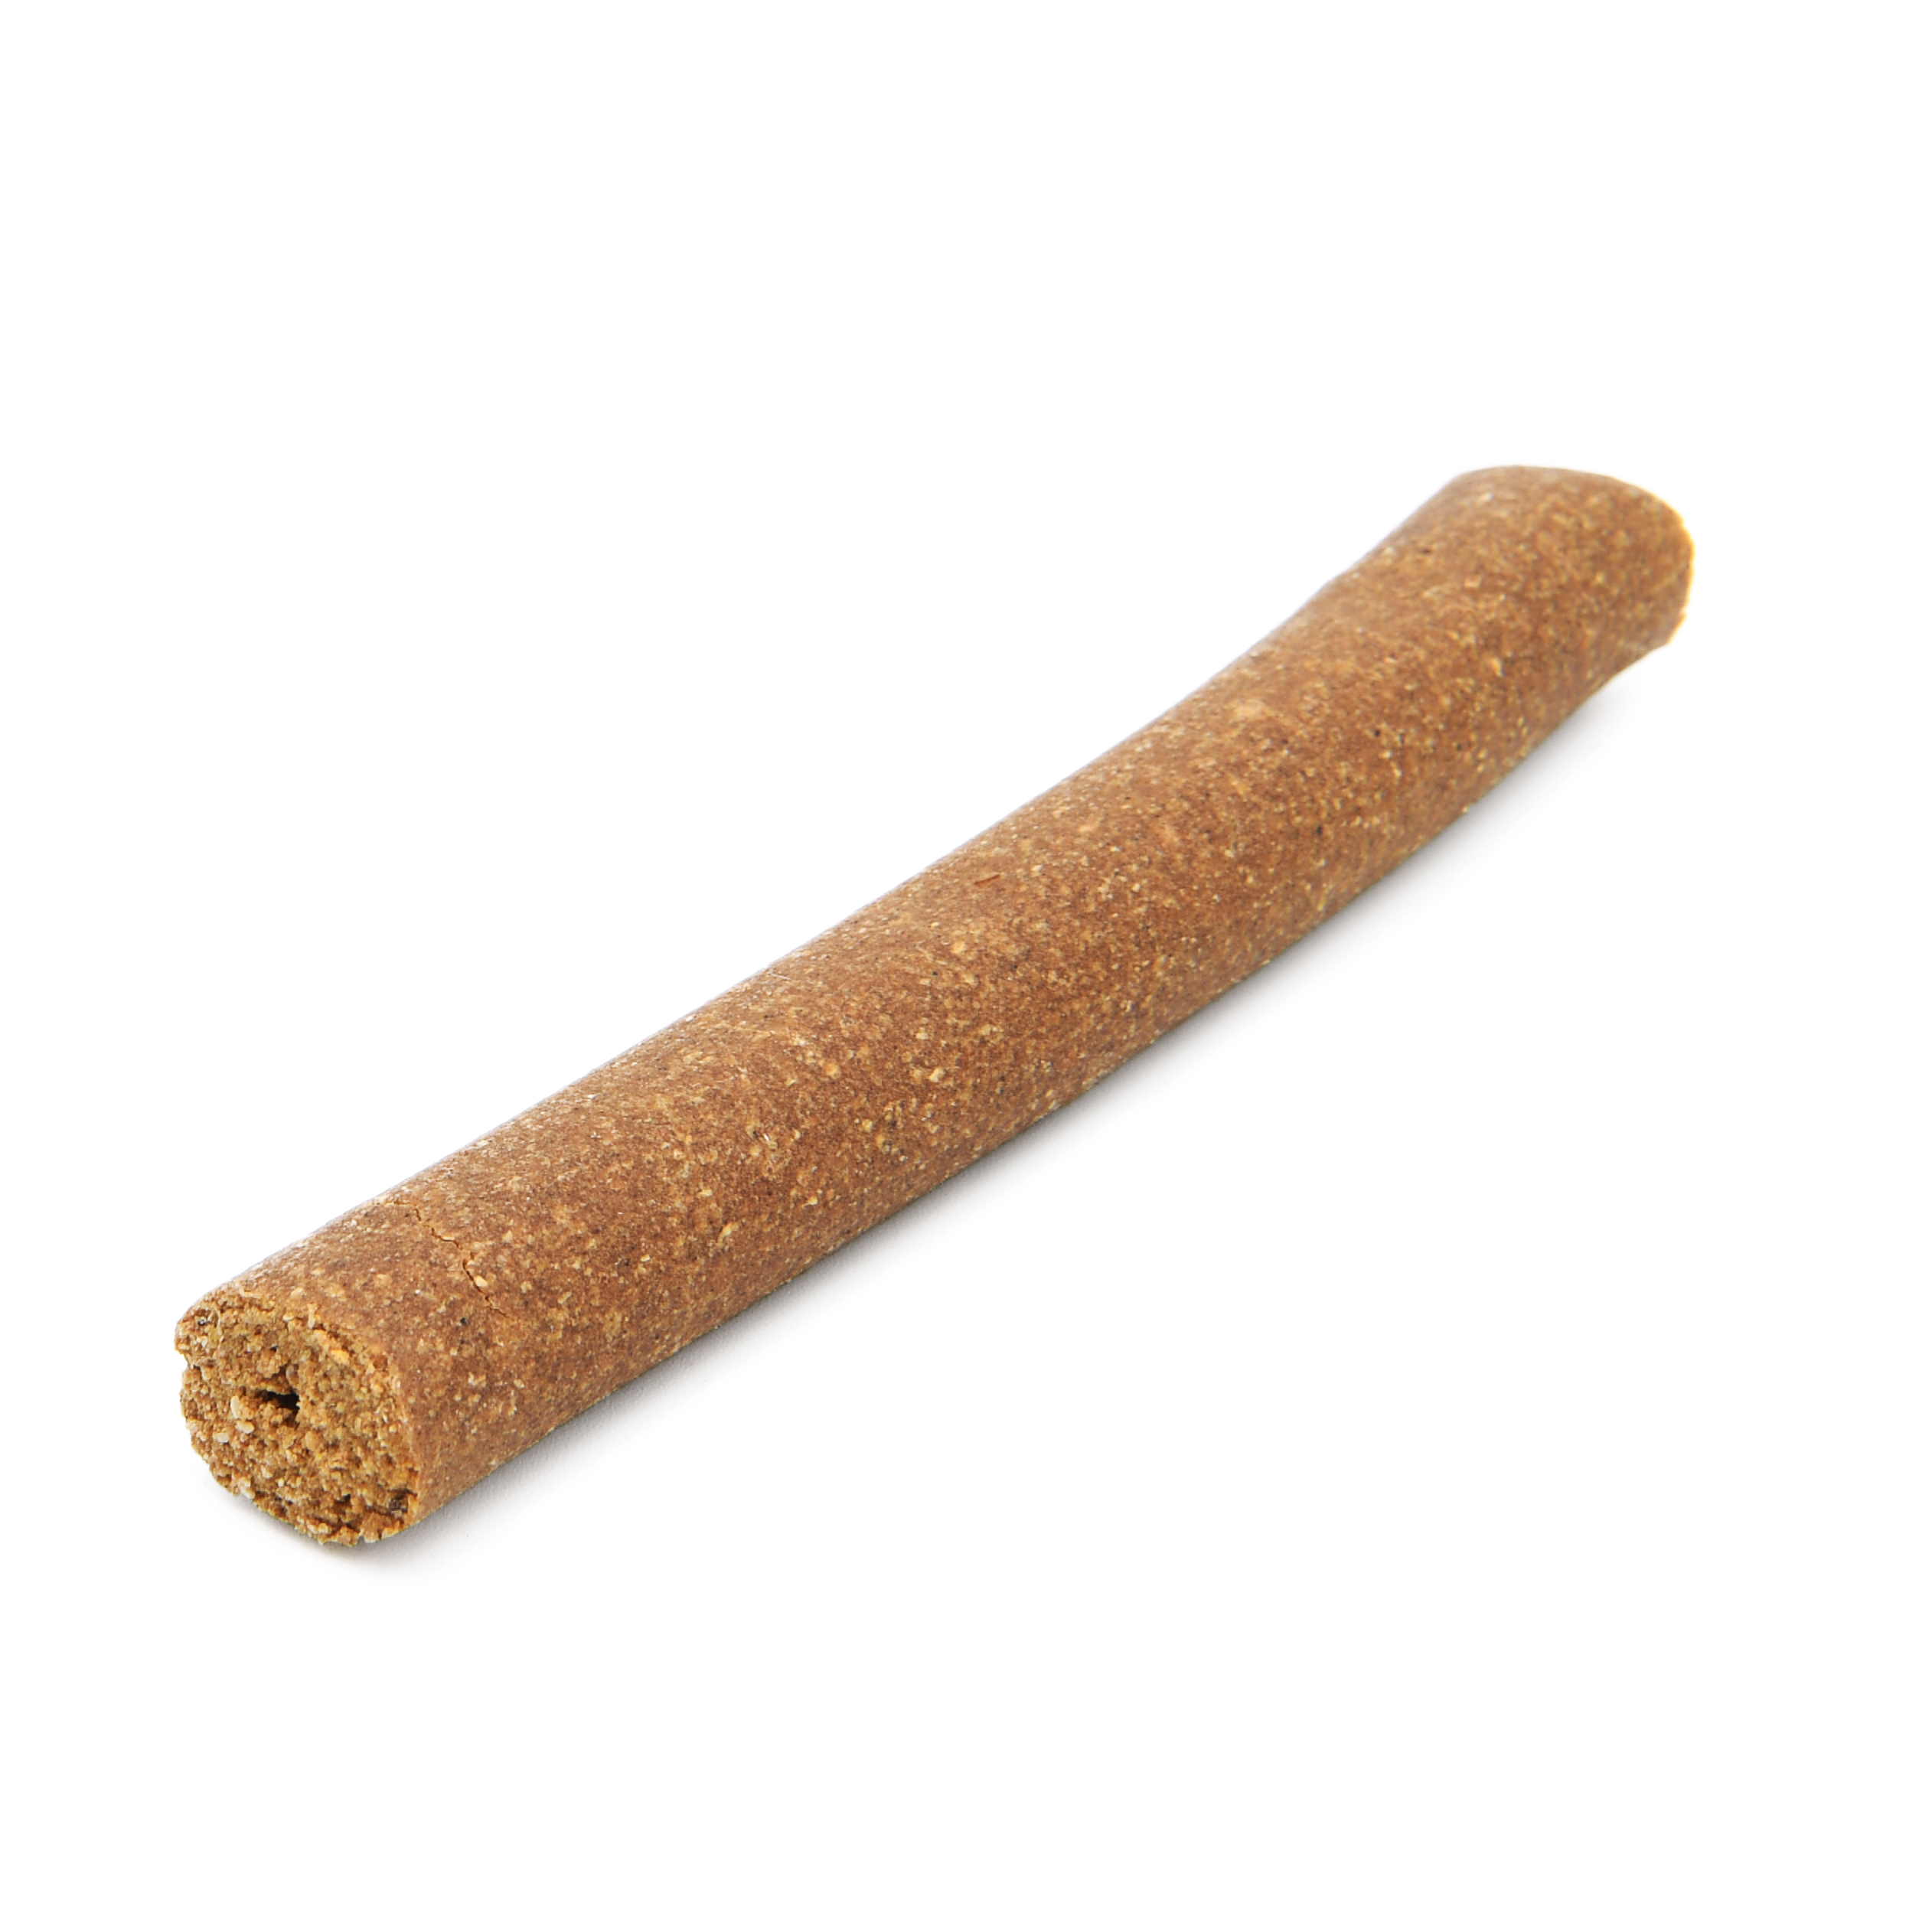 Crunchy Peanut Roll